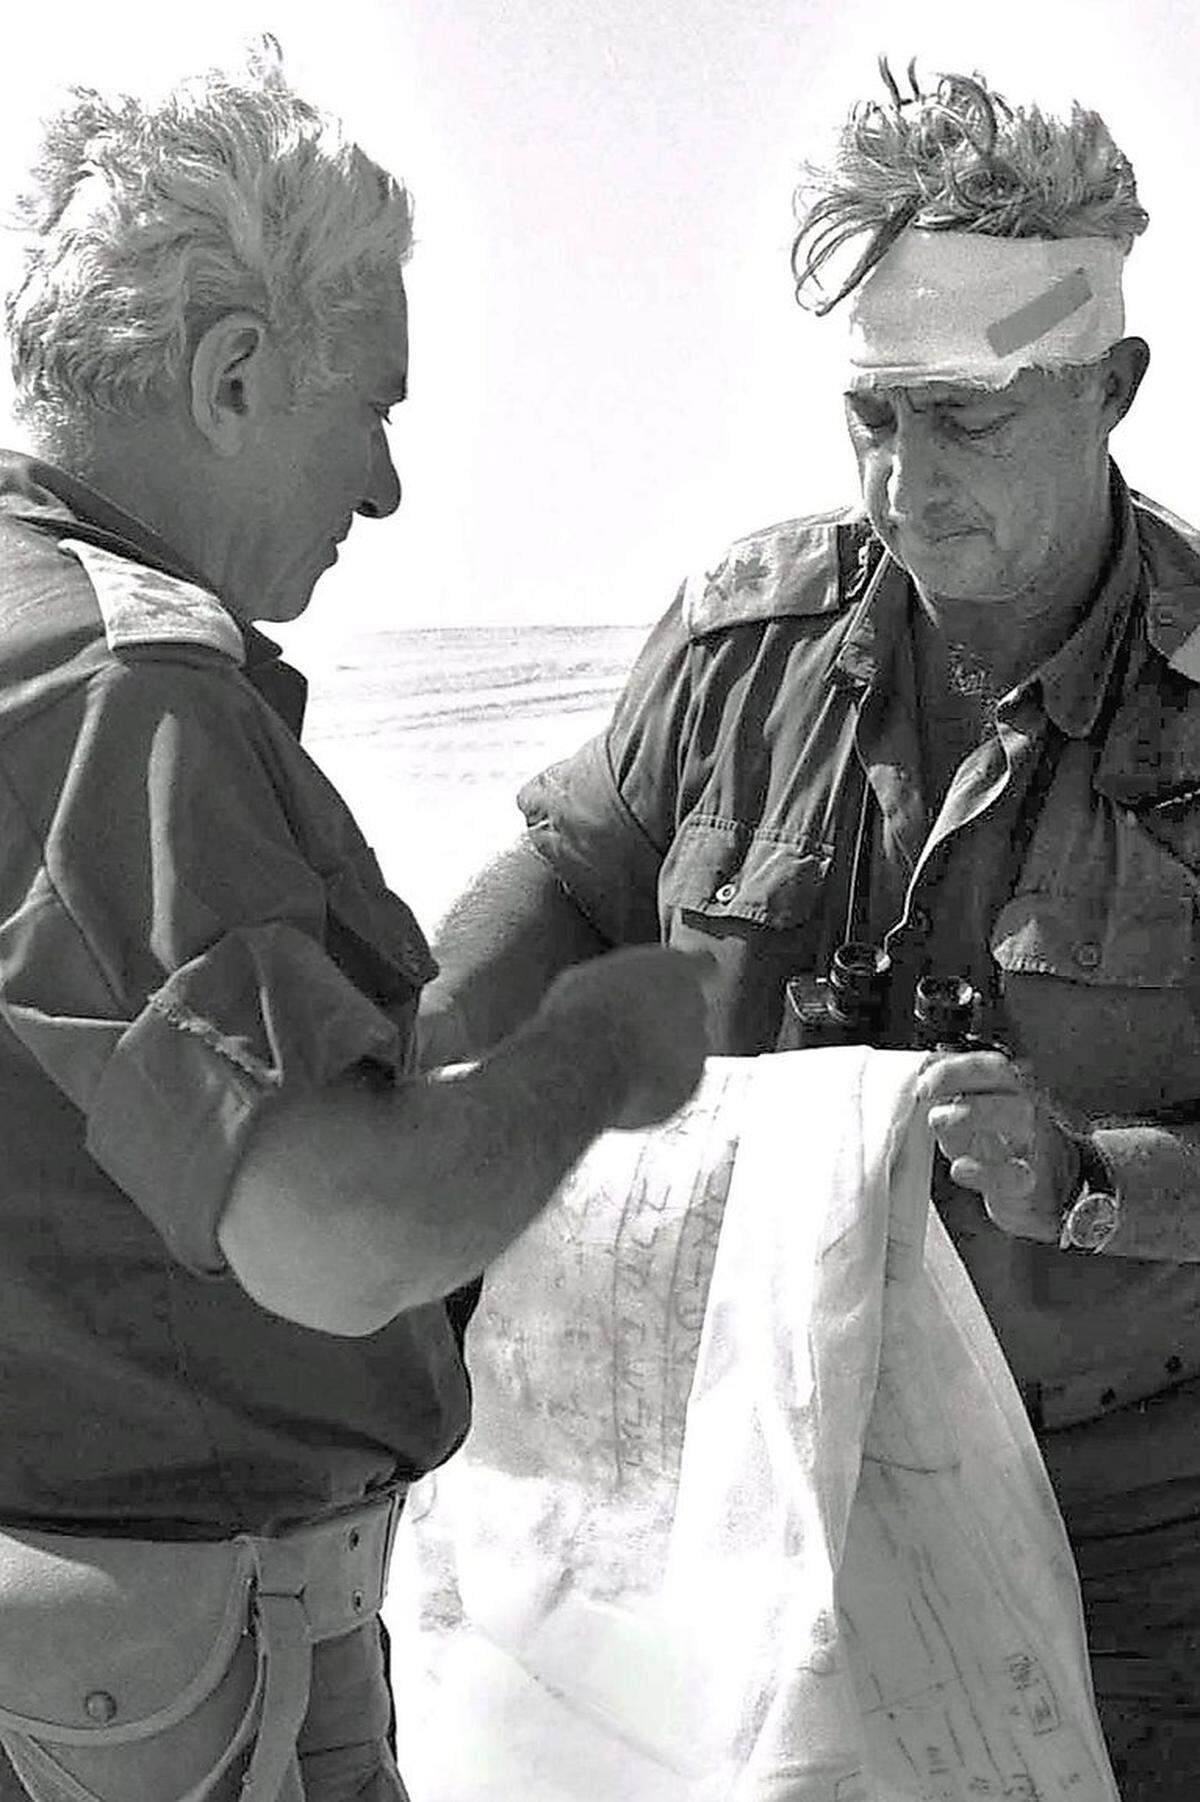 Schon wieder Krieg: Als die arabischen Nachbarn 1973 Israel überfieleln (Jom-Kippur-Krieg), wollte man Auf Scharons Expertise nicht verzichten. Er wurde aus dem militärischen Ruhestand zurückbeordert und konnte entscheidende Erfolge gegen Ägypten auf seinem Konto verbuchen.